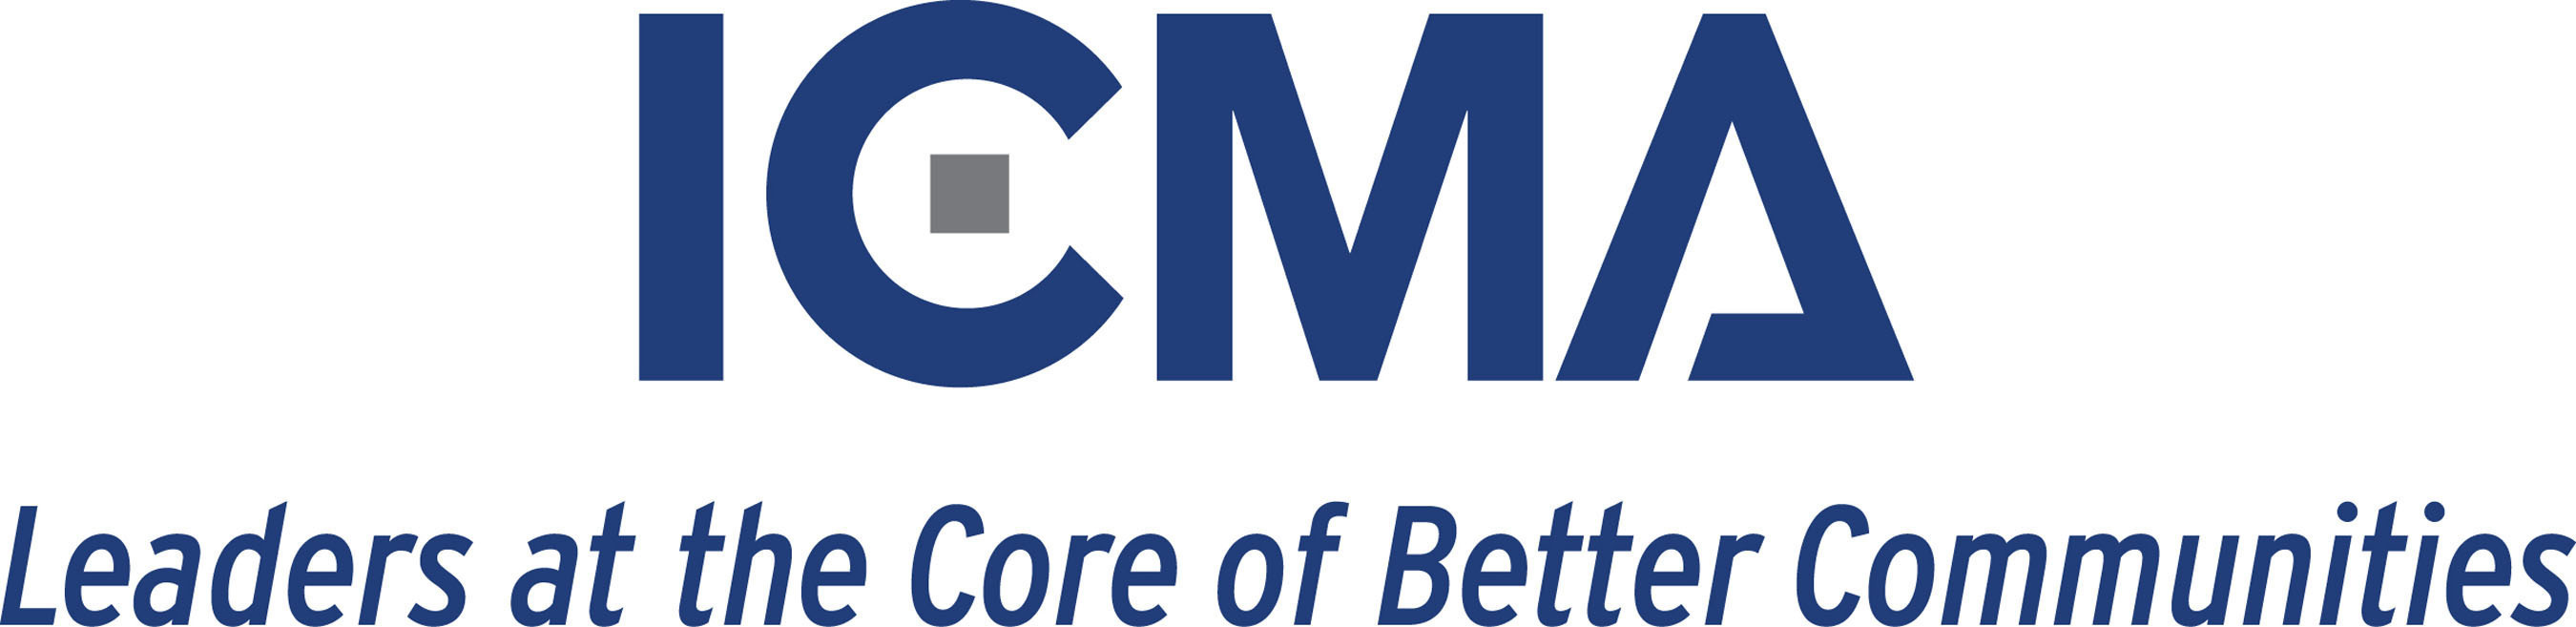 ICMA Logo.